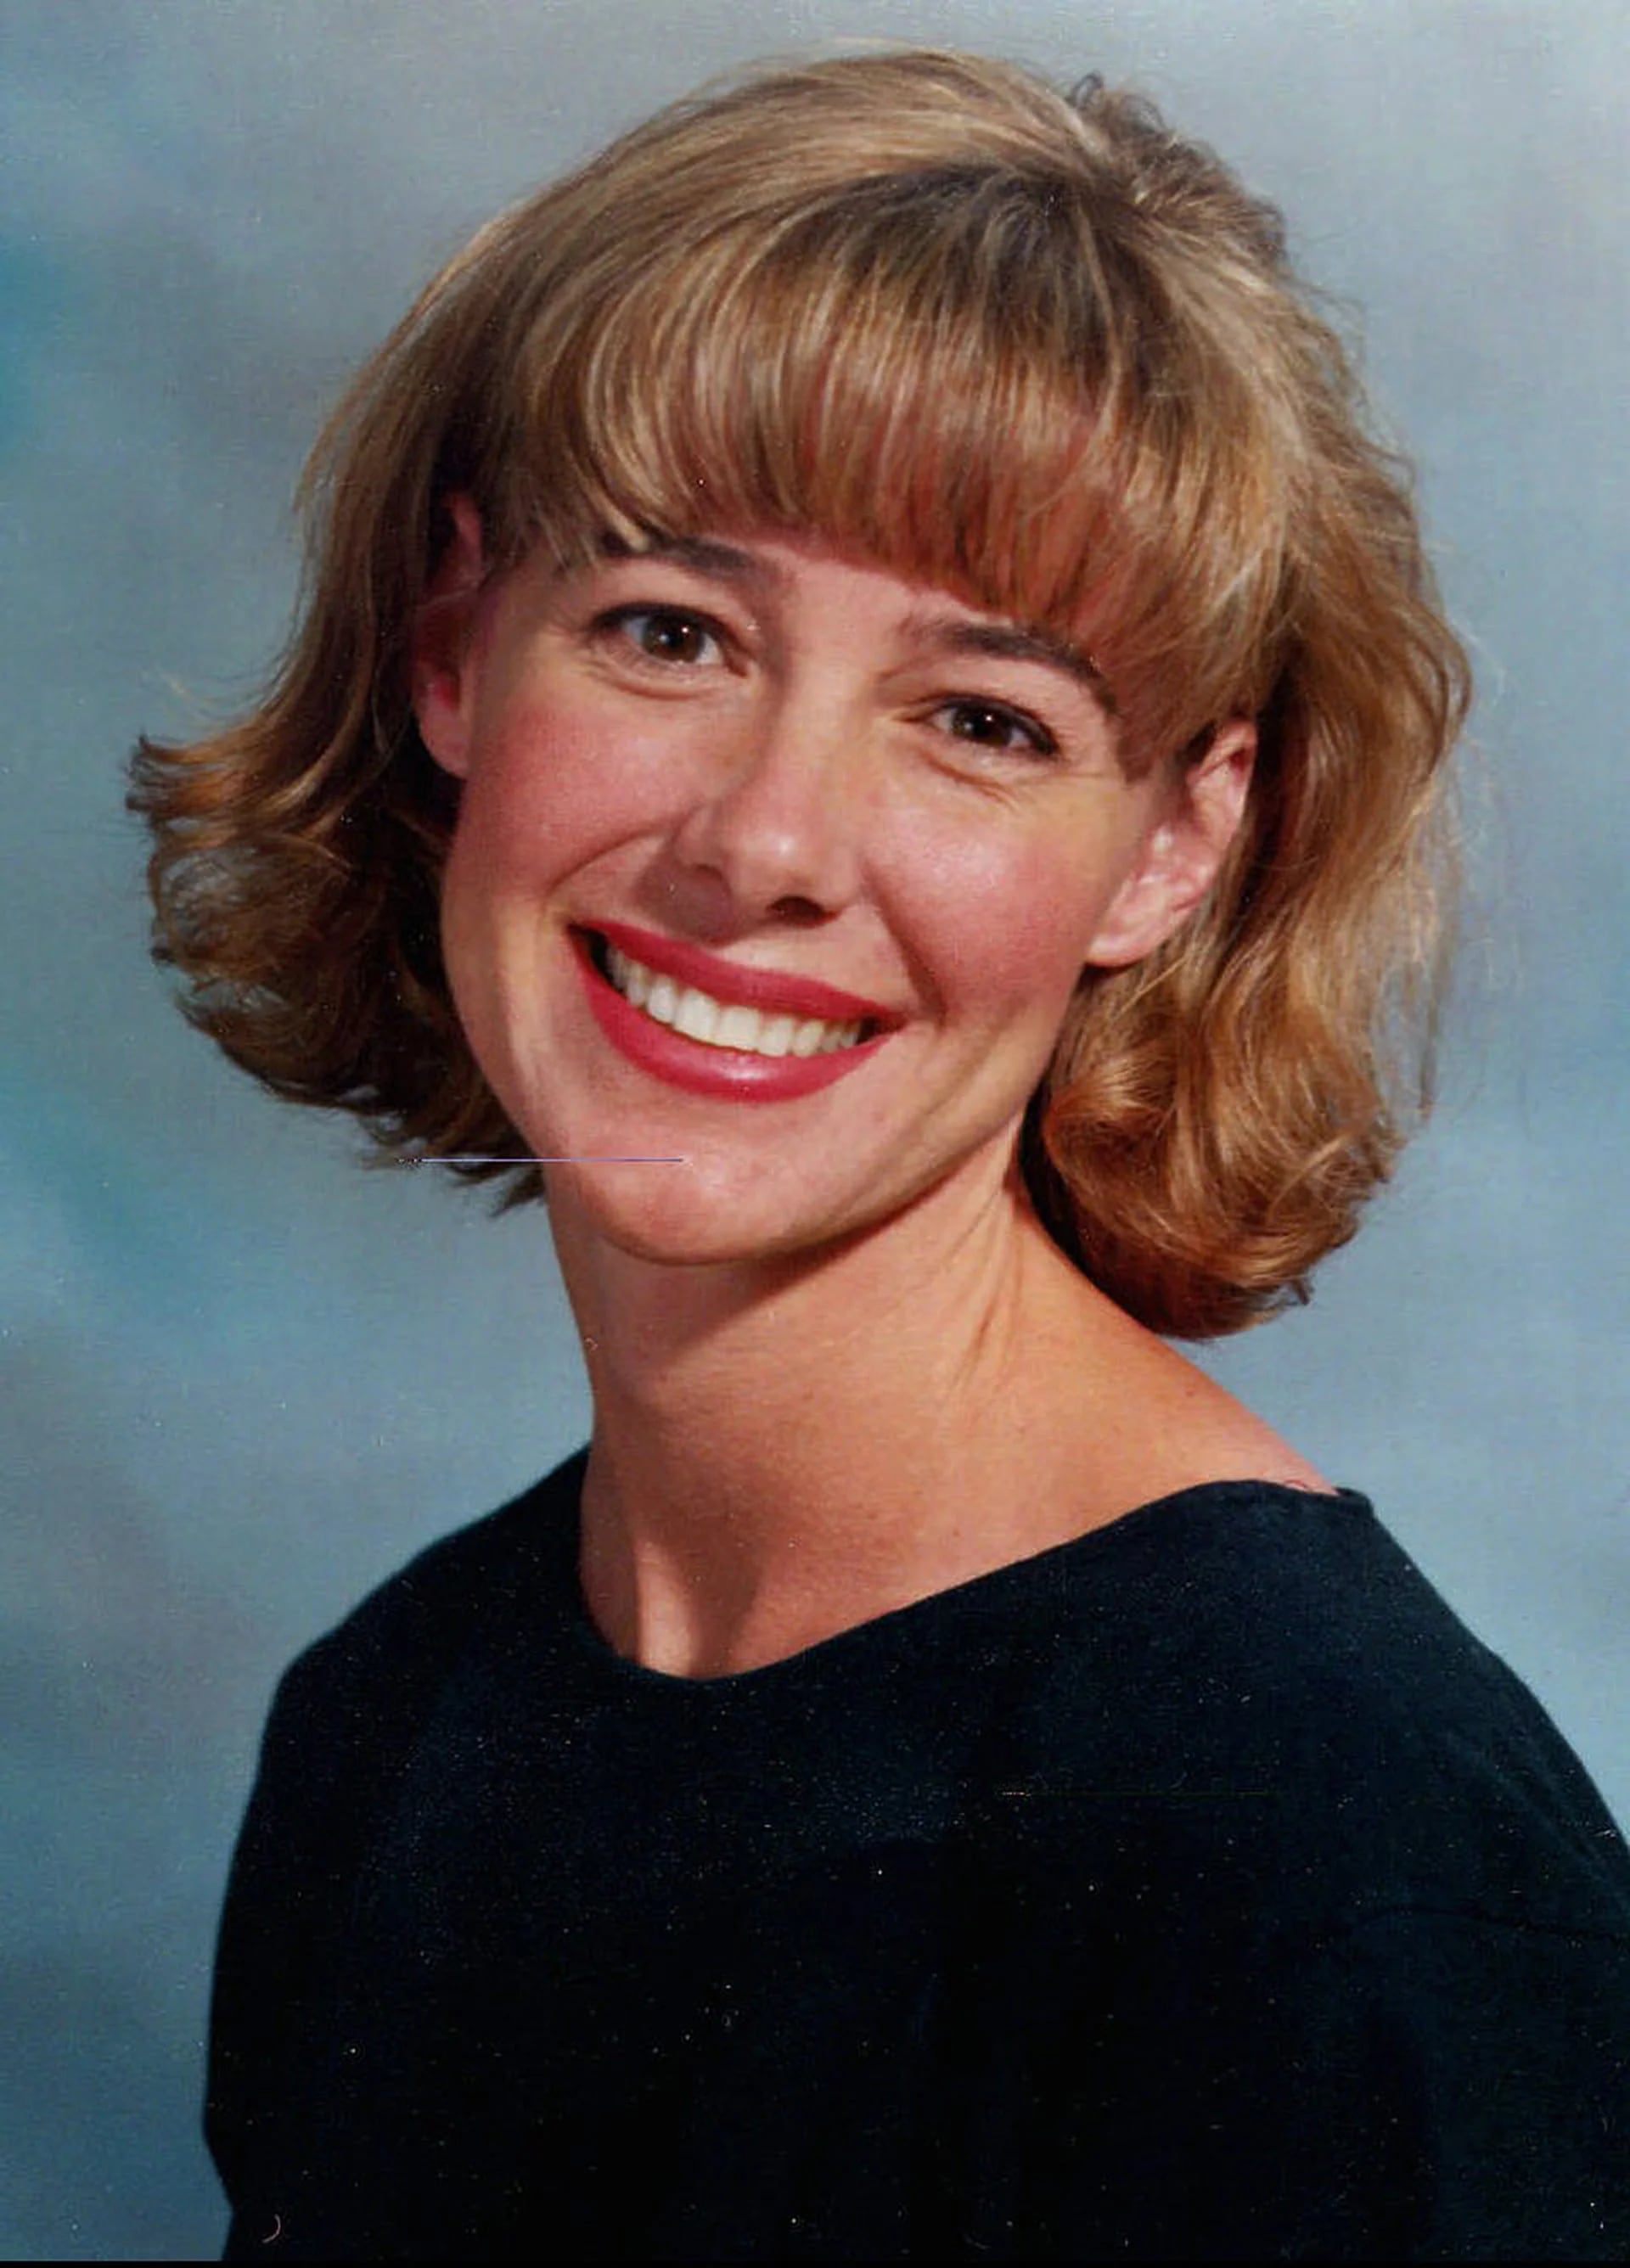 Mary Kay Letourneau era maestra de sexto grado en una escuela de Seattle. Al conocerse su affaire con un menor, le retiraron la licencia (AP)